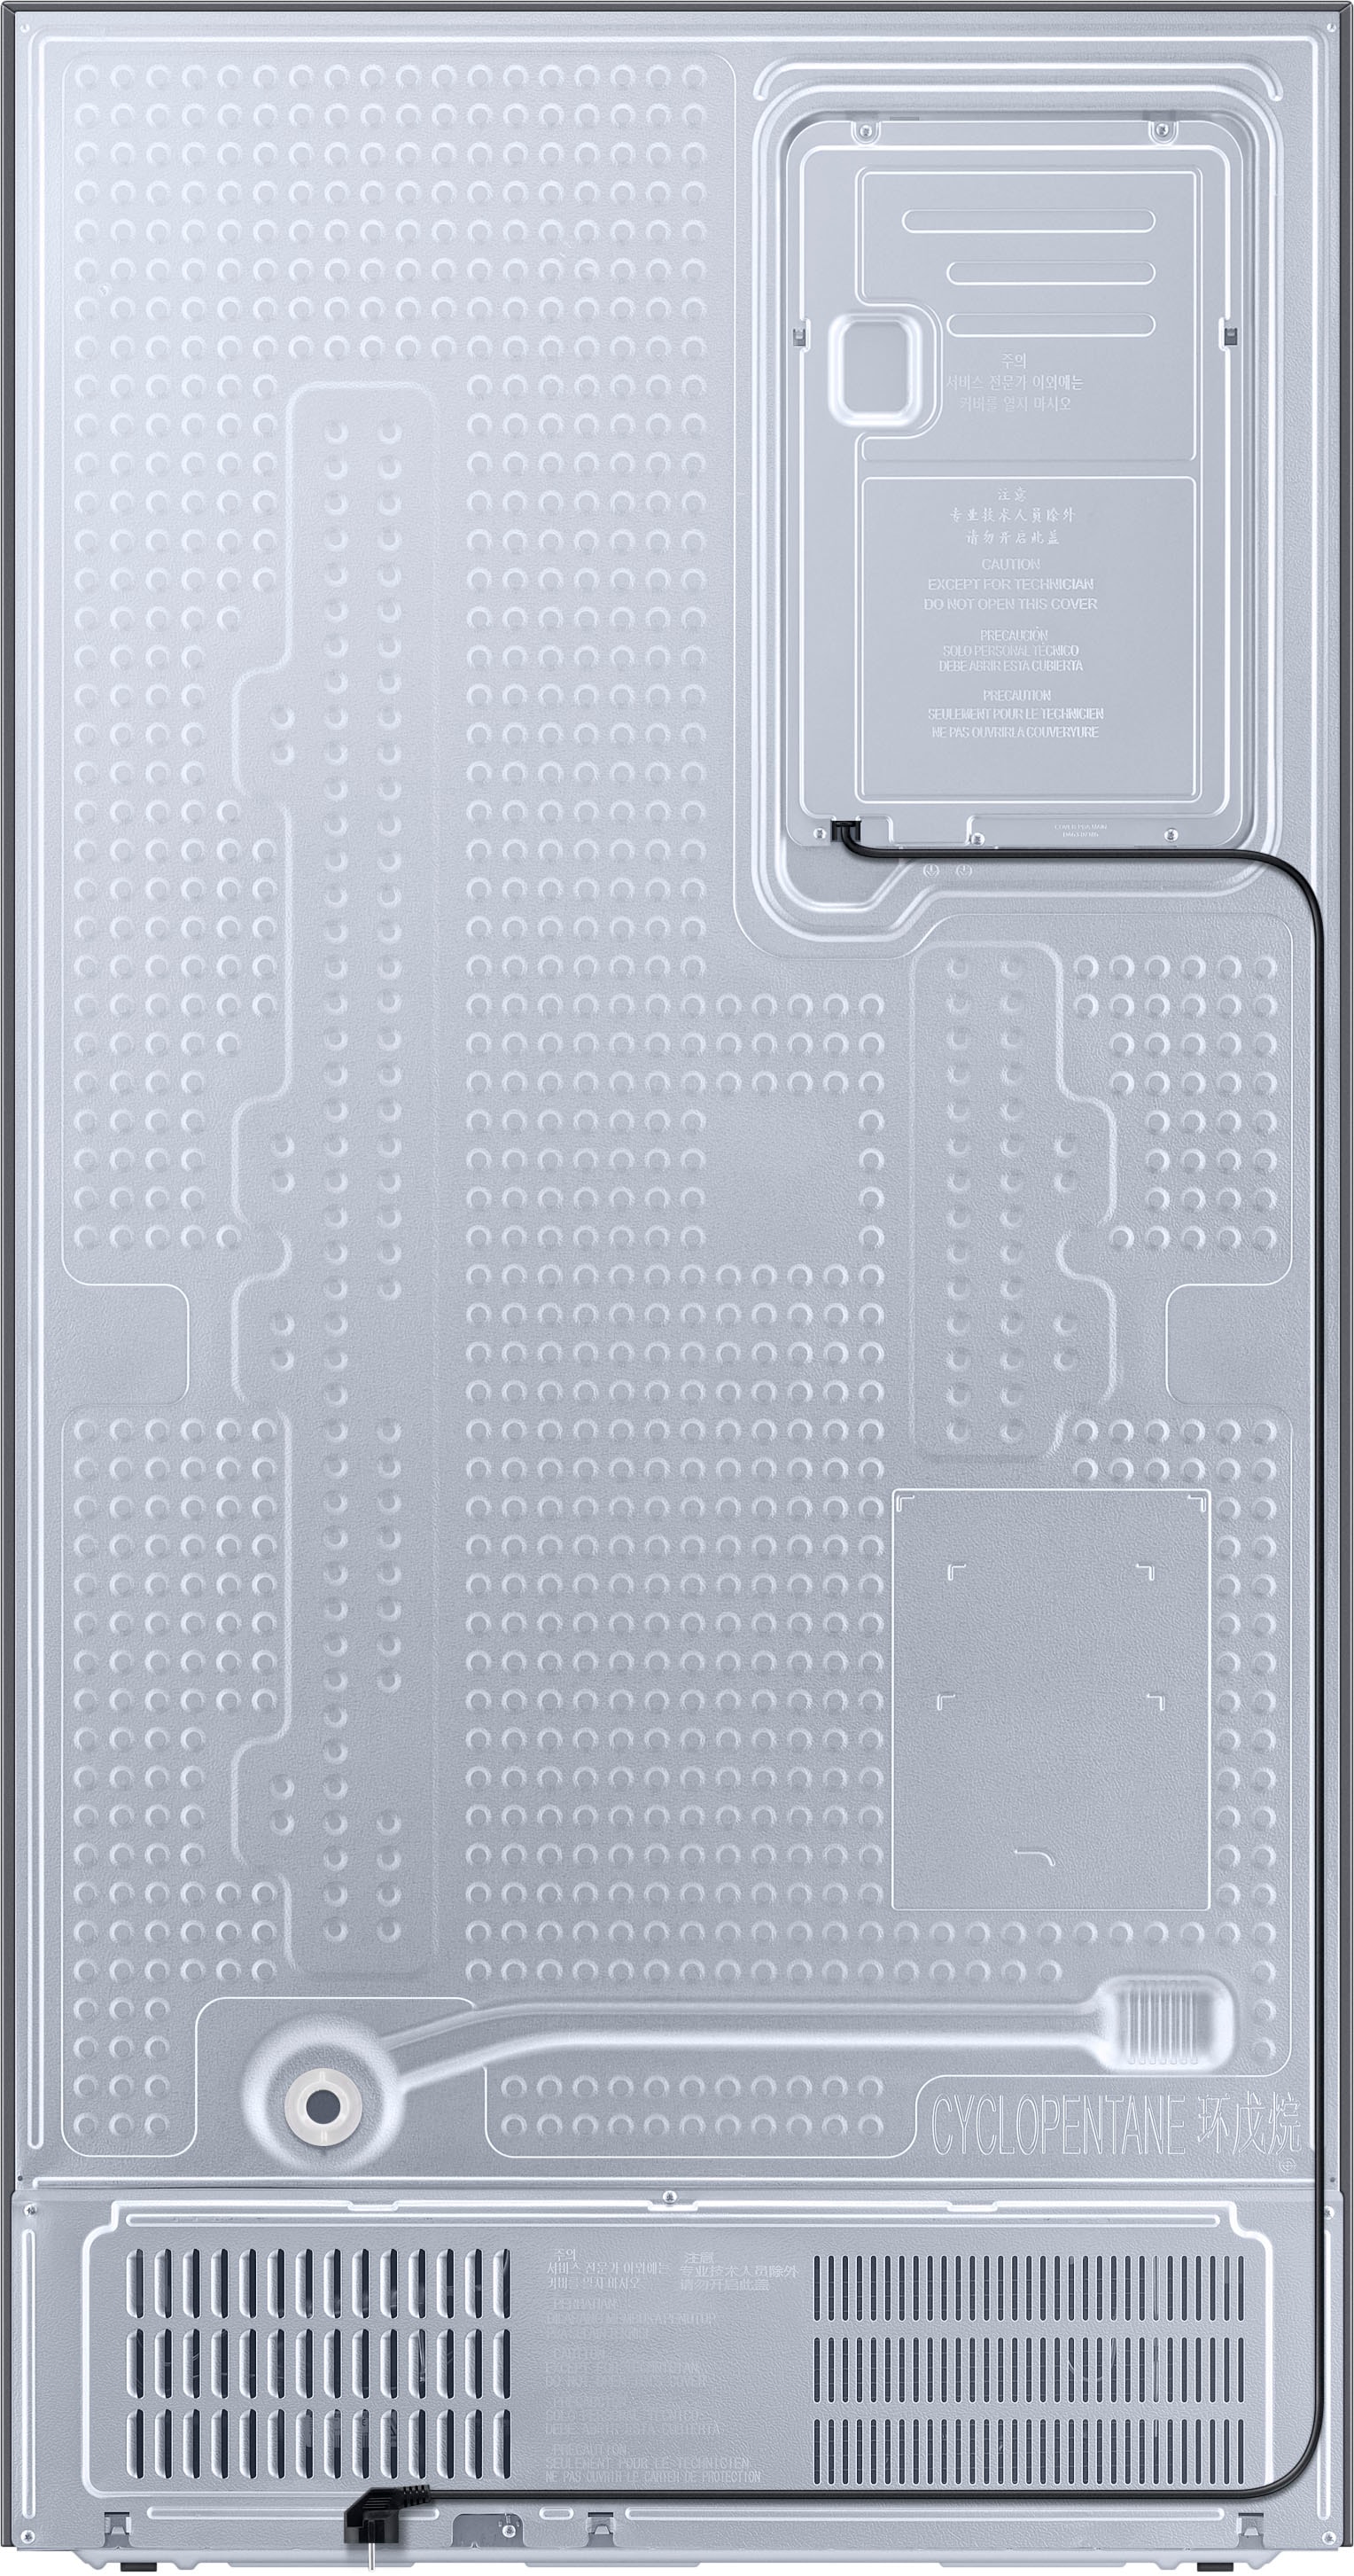 Samsung Side-by-Side »RS6GA8521«, RS6GA8521B1, 178 cm hoch, 91,2 cm breit